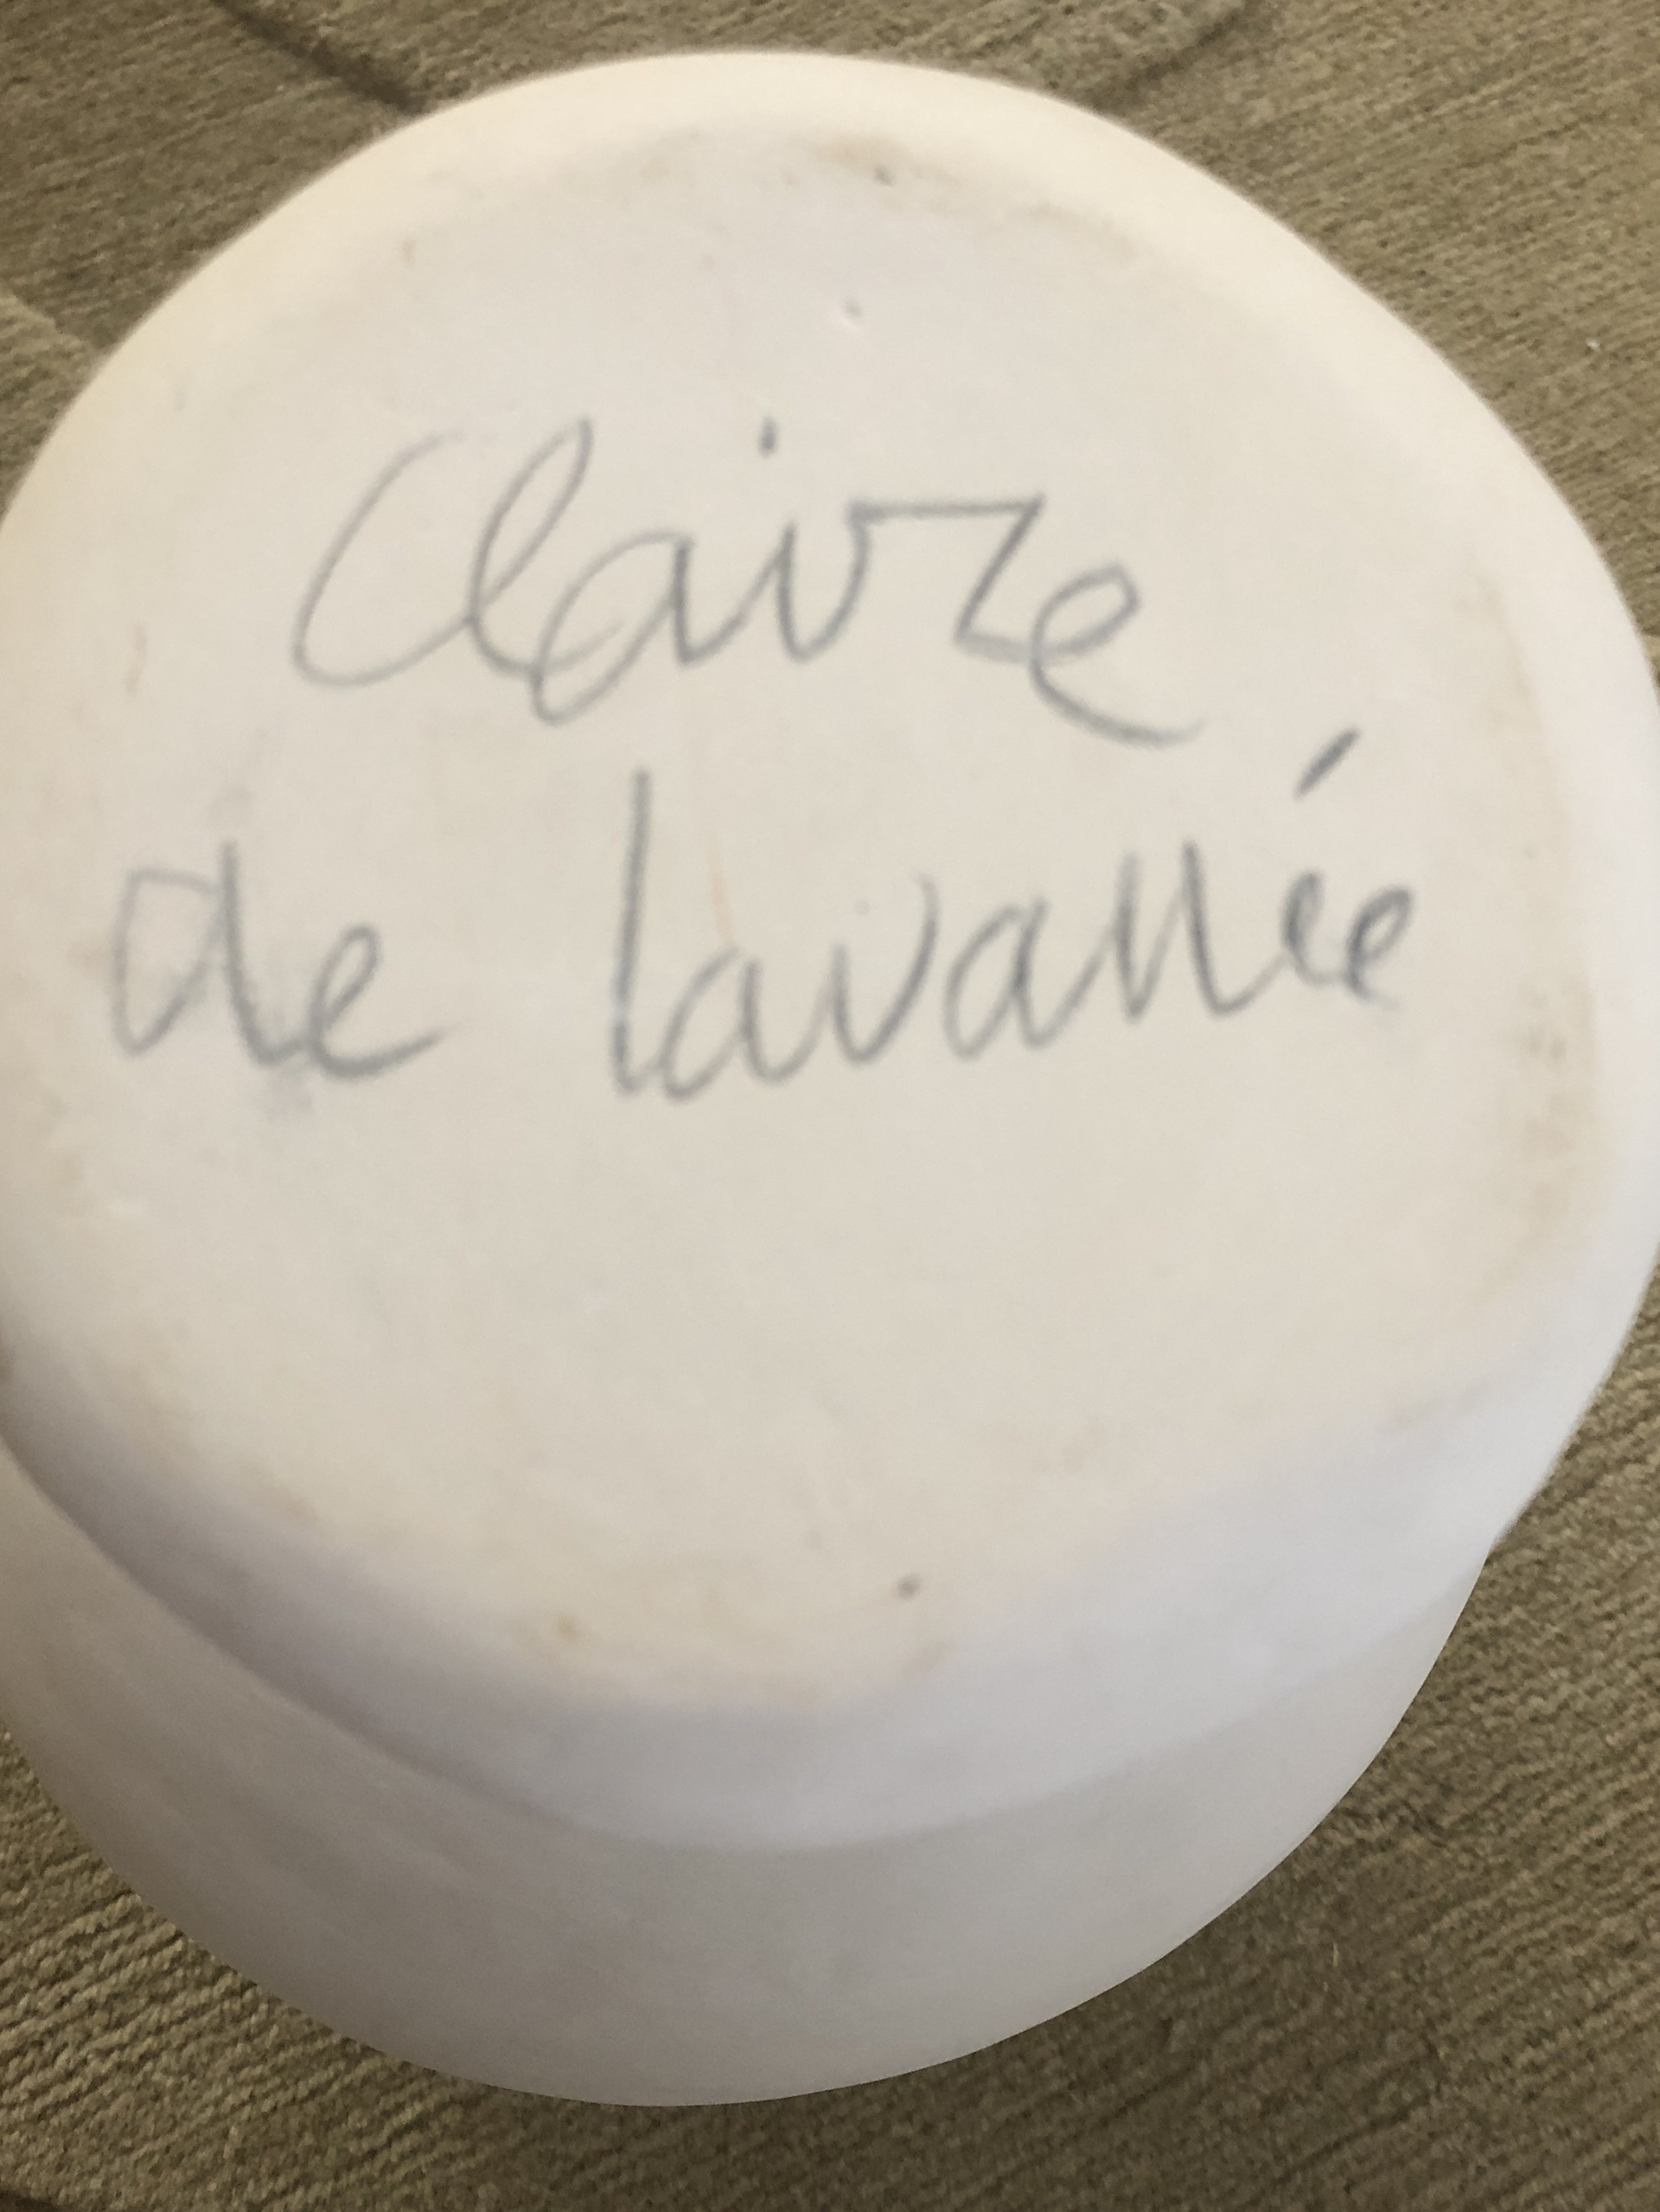 "Aiguière" Ceramic by Claire de Lavallee